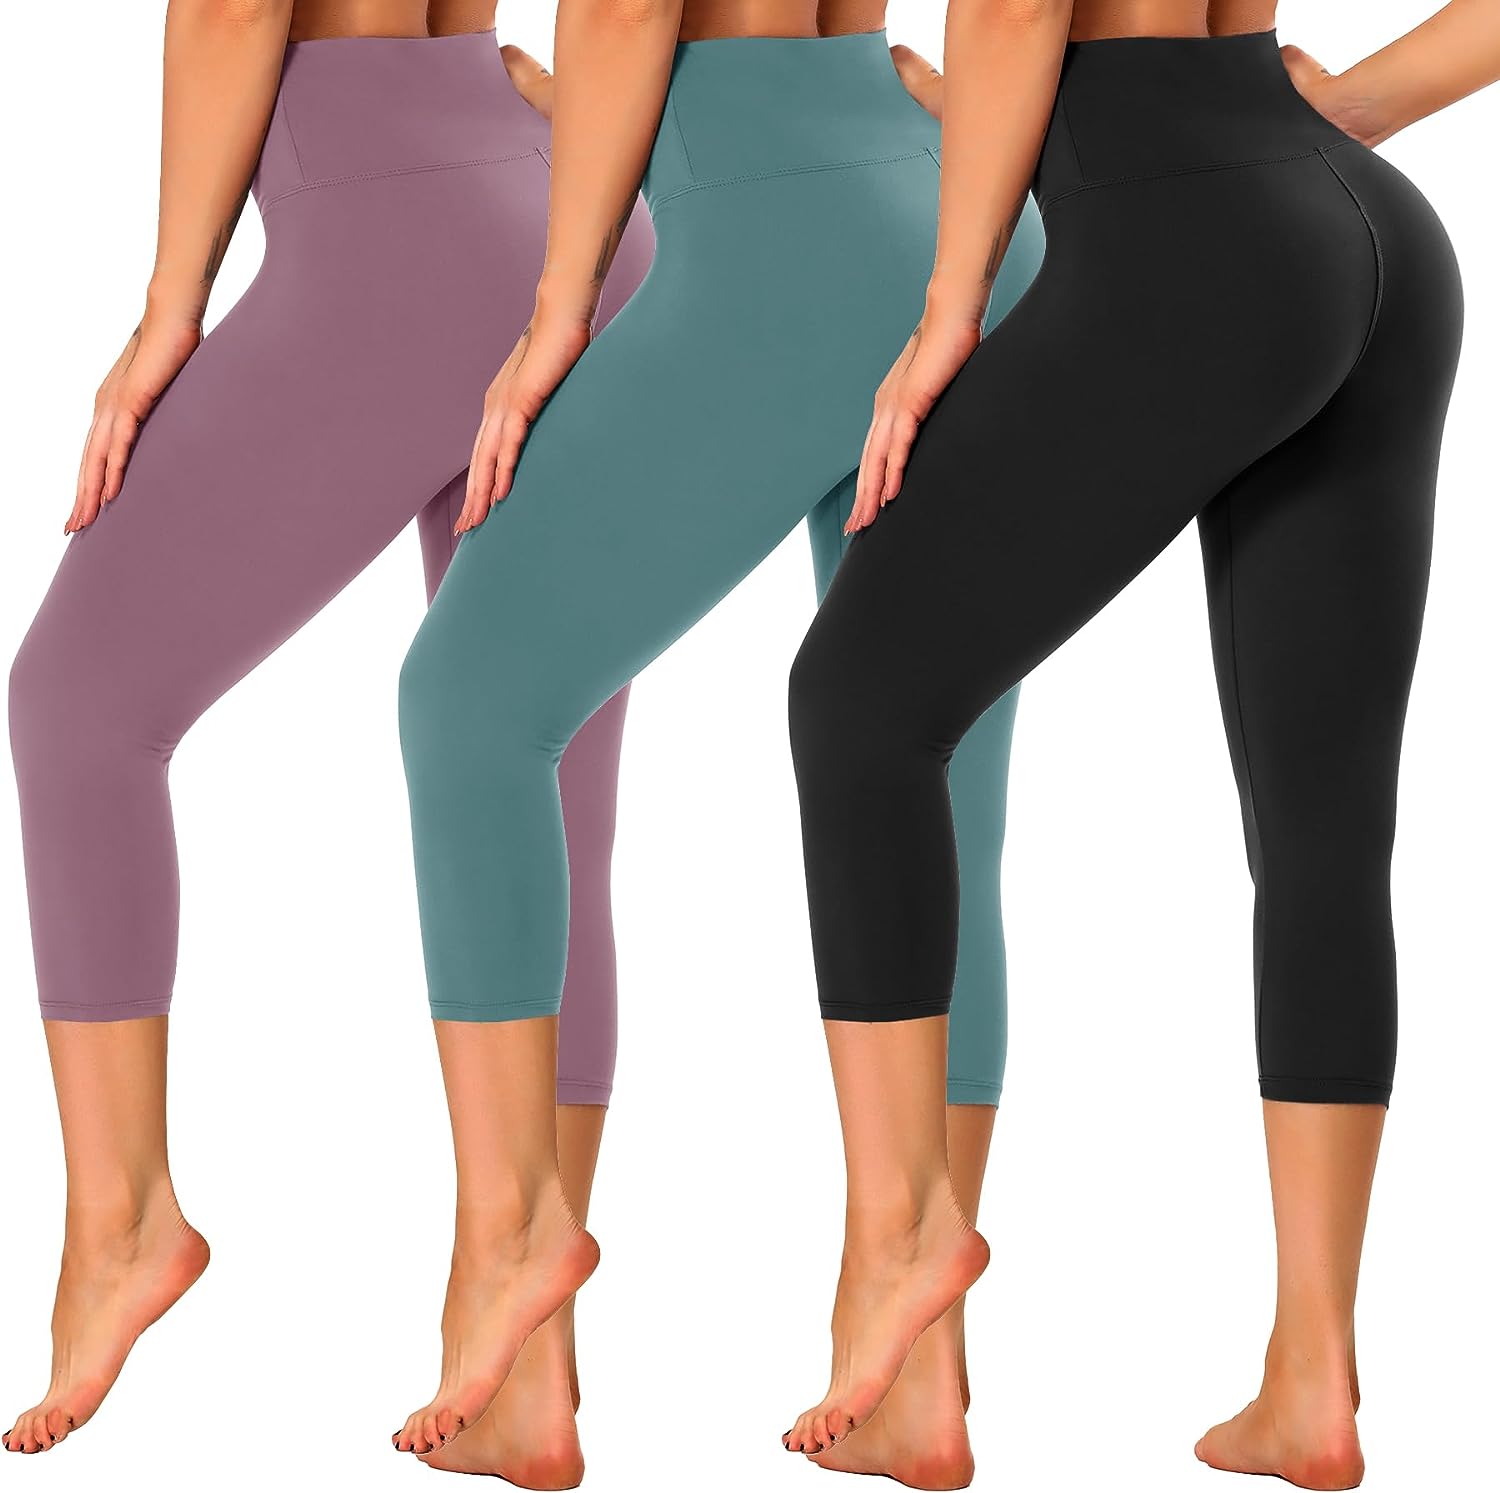 GAYHAY 3 Pack High Waisted Capri Leggings for Women - Soft Stretch